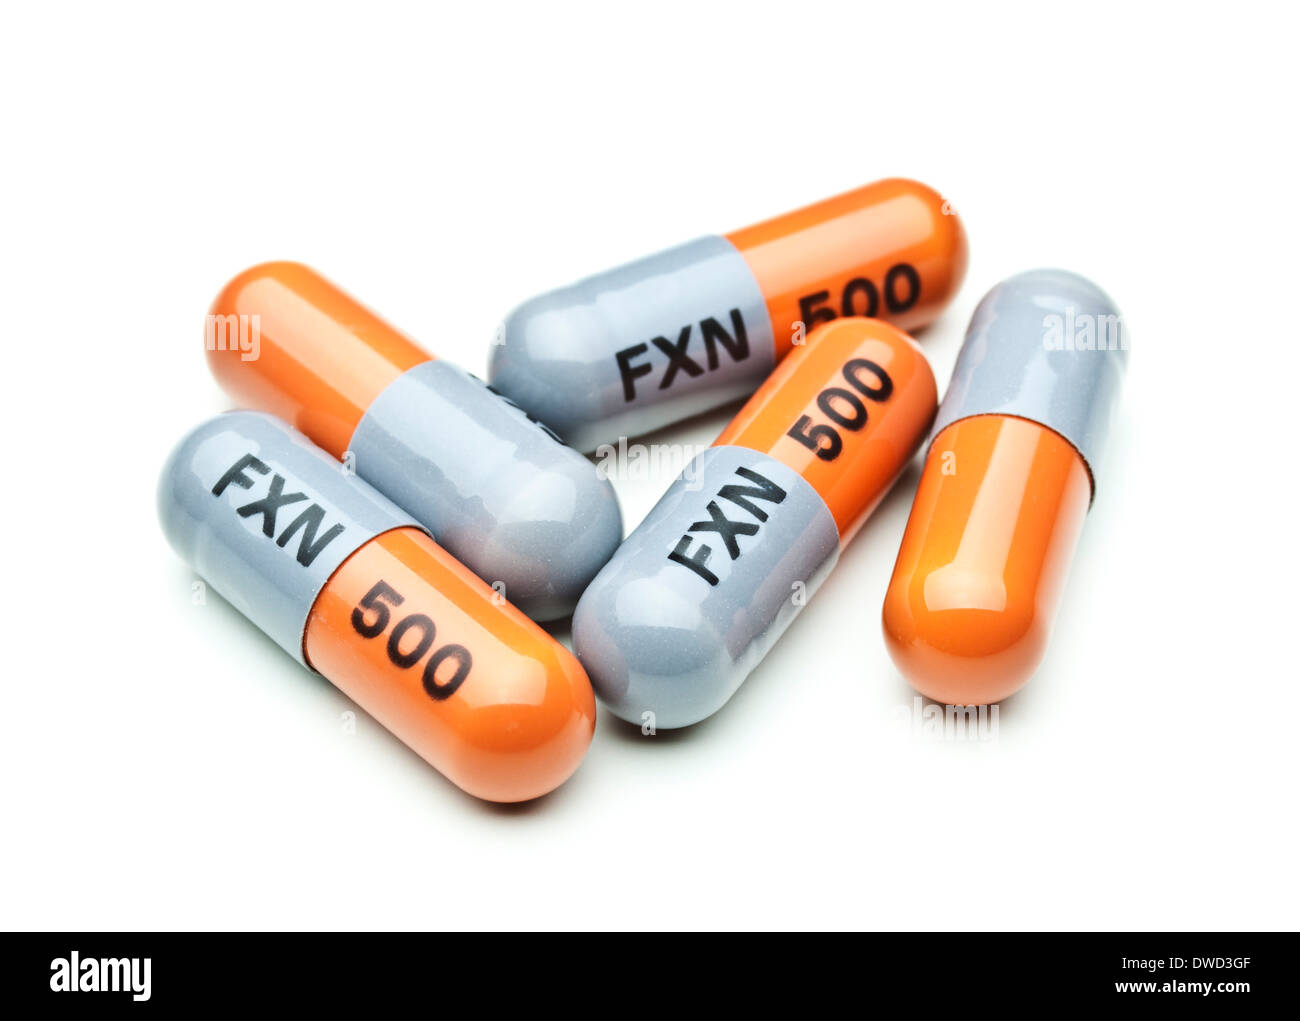 Flucloxacillin-500mg-Kapseln-Penicillin-Antibiotika-Tabletten Stockfoto